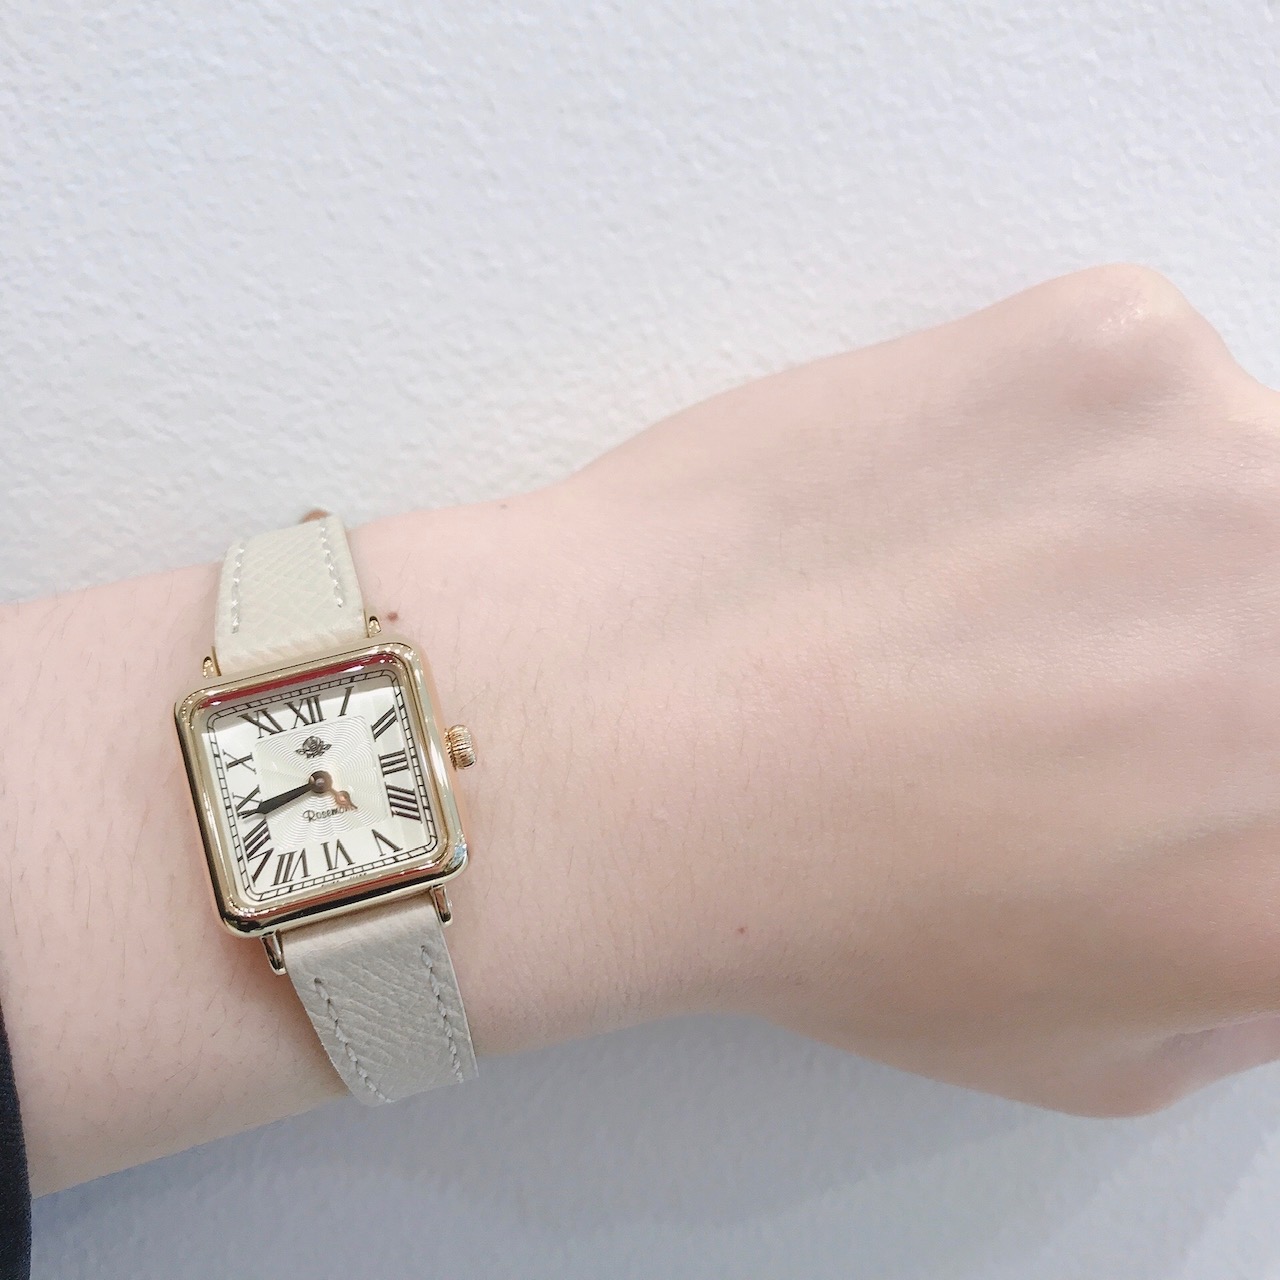 スイス伝統の時計技術とスタイルを受け継ぐ腕時計「ロゼモン」から新作